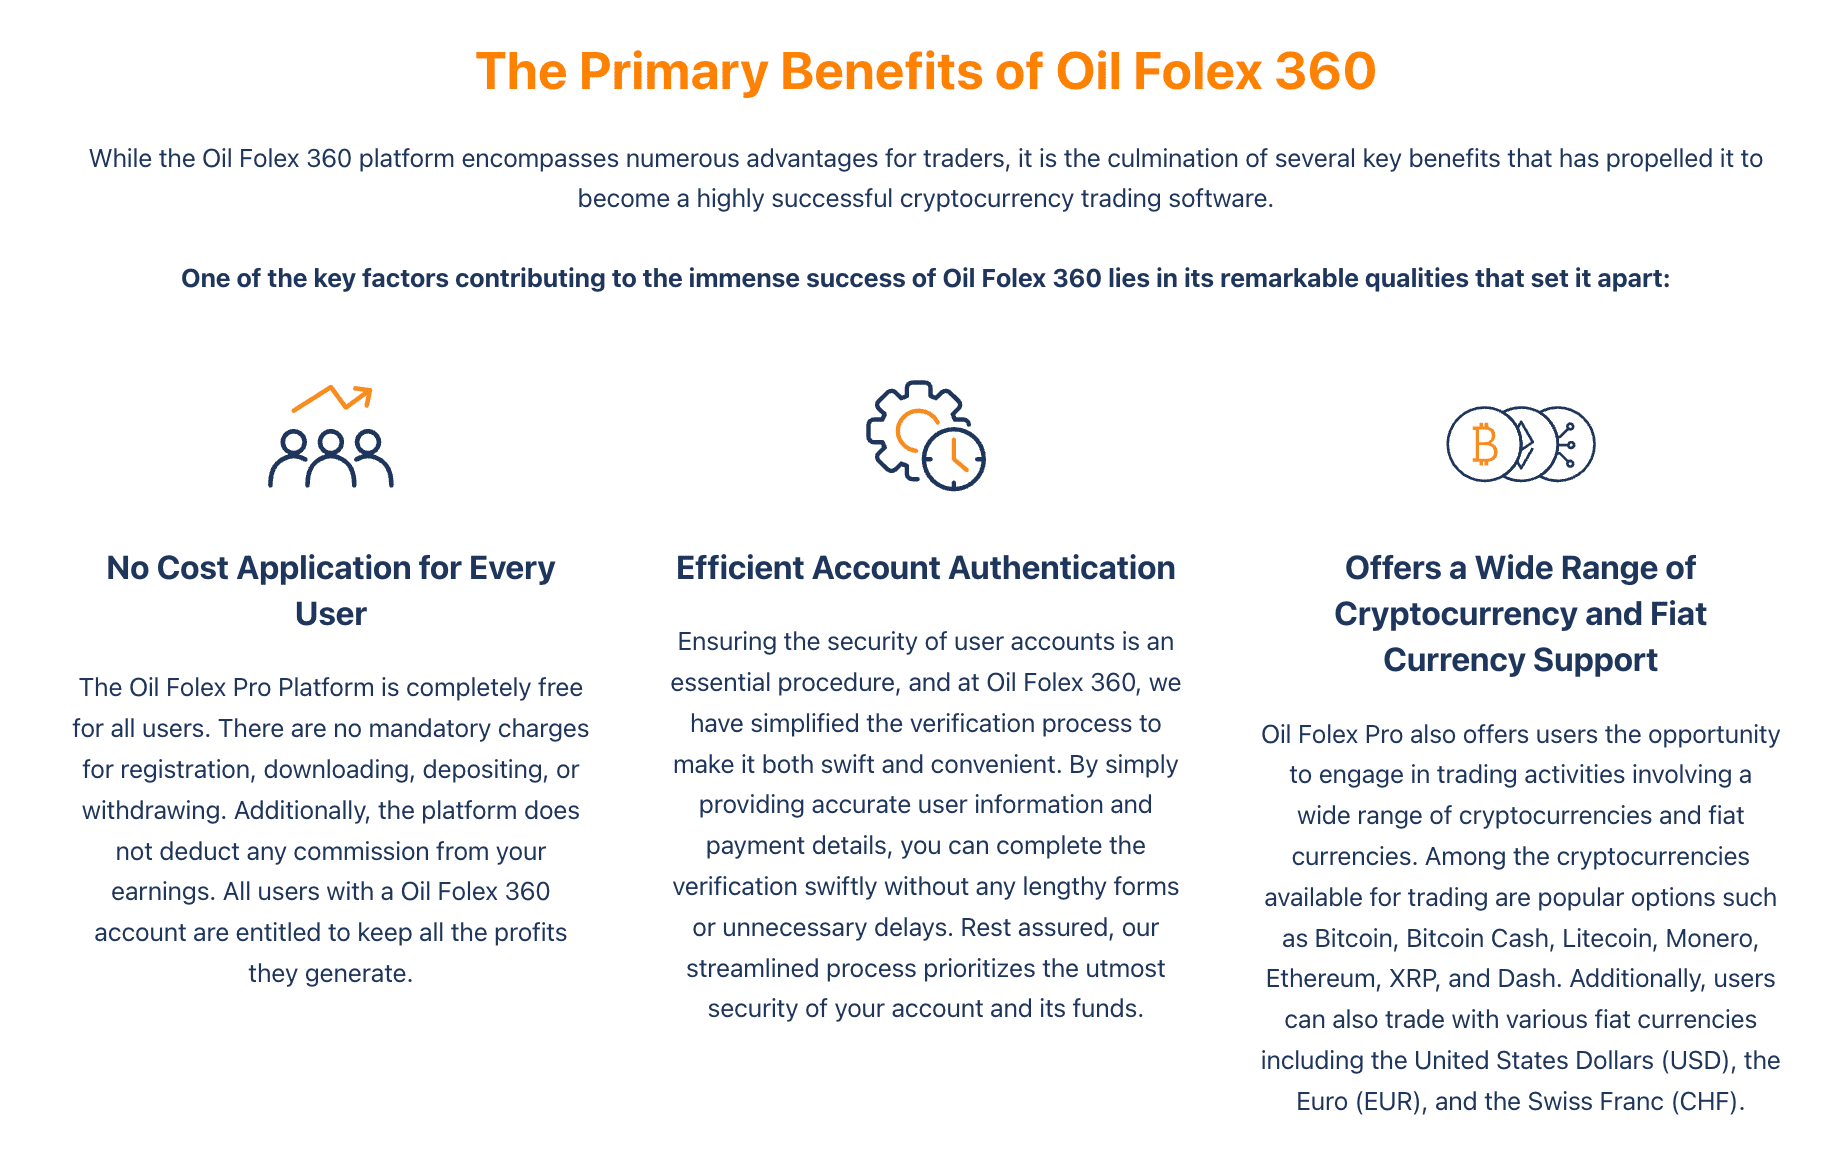 De primære fordelene med Oil Folex 360